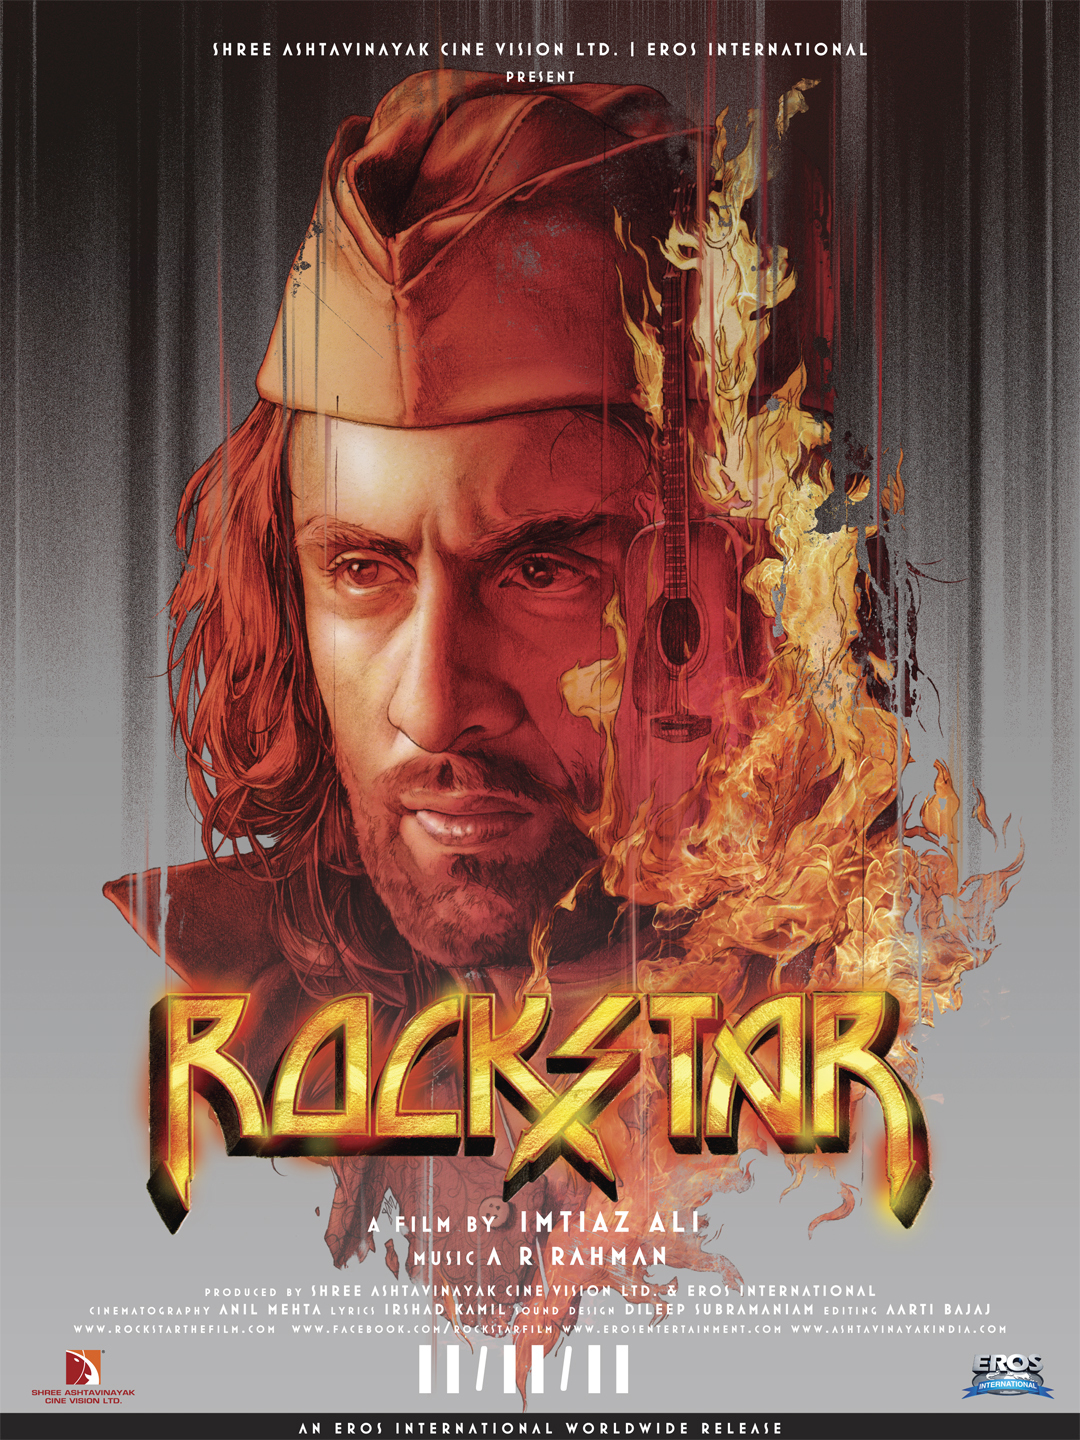 Rockstar Movie Download 480p